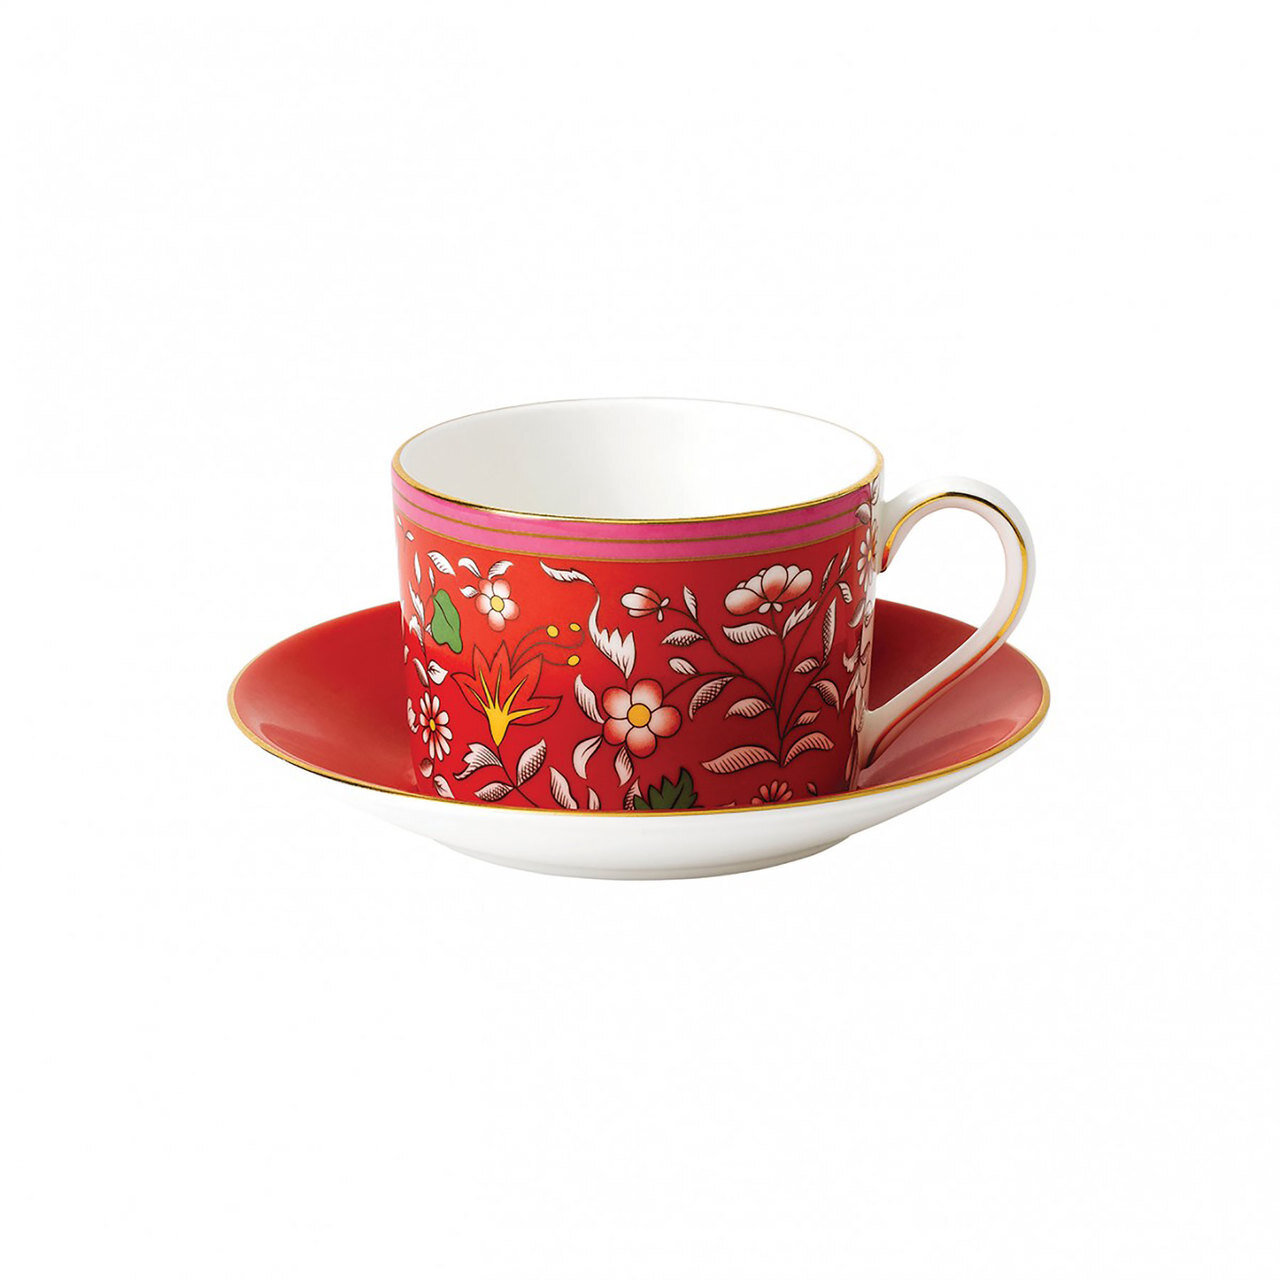 Wedgwood Wonderlust Teacup & saucer Set Crimson Jewel 40031700